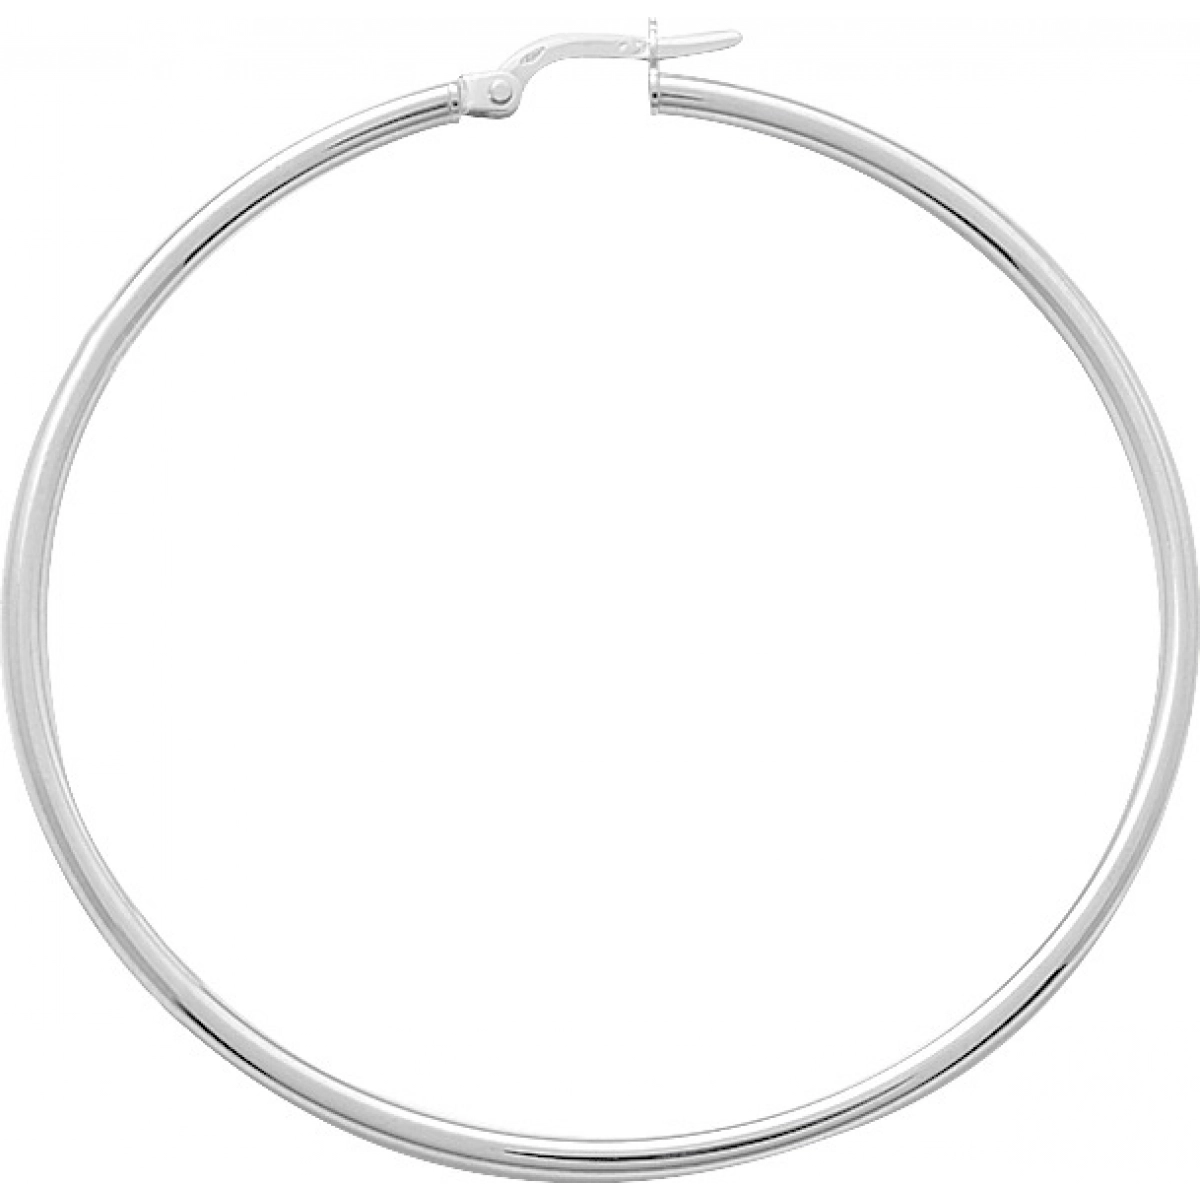 Hoops earrings pair 18K WG  Lua Blanca  2535.10G.0